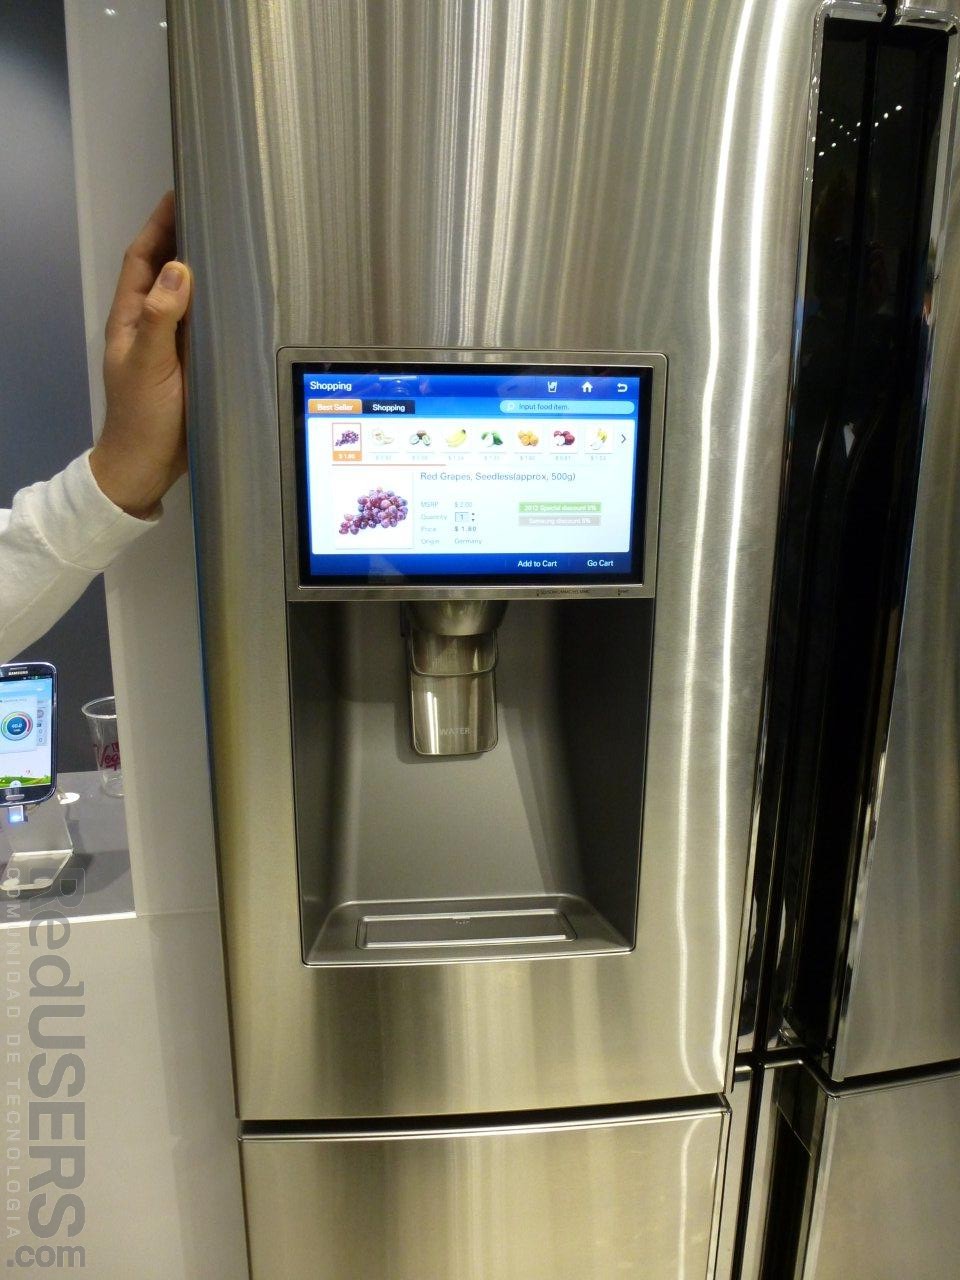 Próximamente podremos abastecer nuestra heladera desde una pantalla